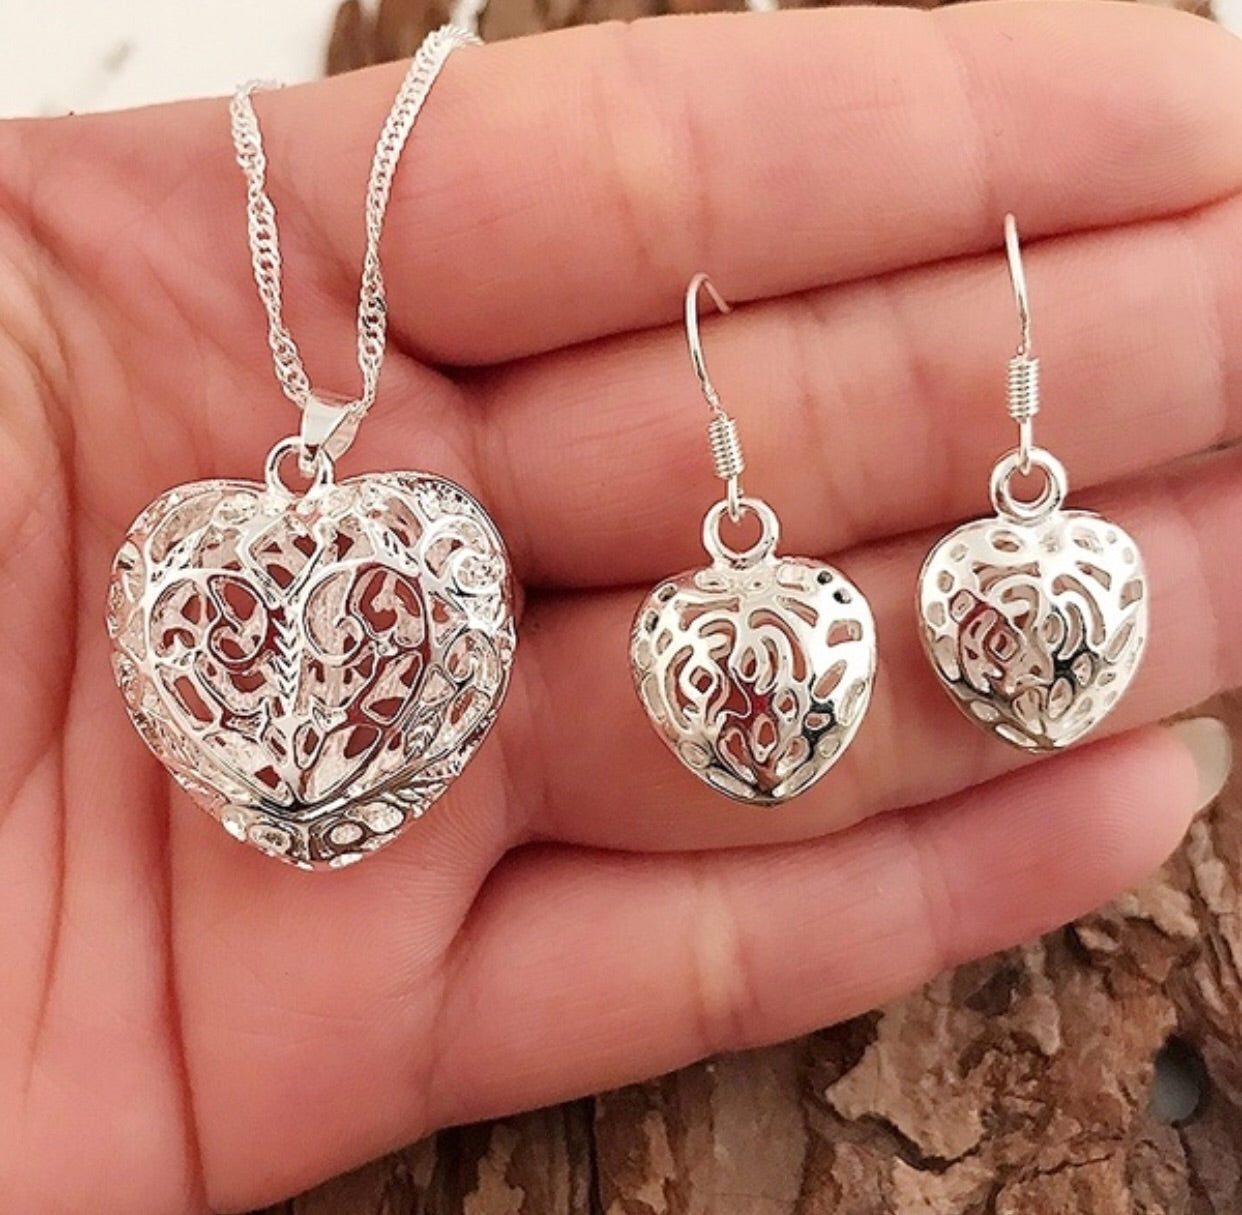 Hollow Heart Silver Jewelry Set - Earrings, Pendant & 16” Chain